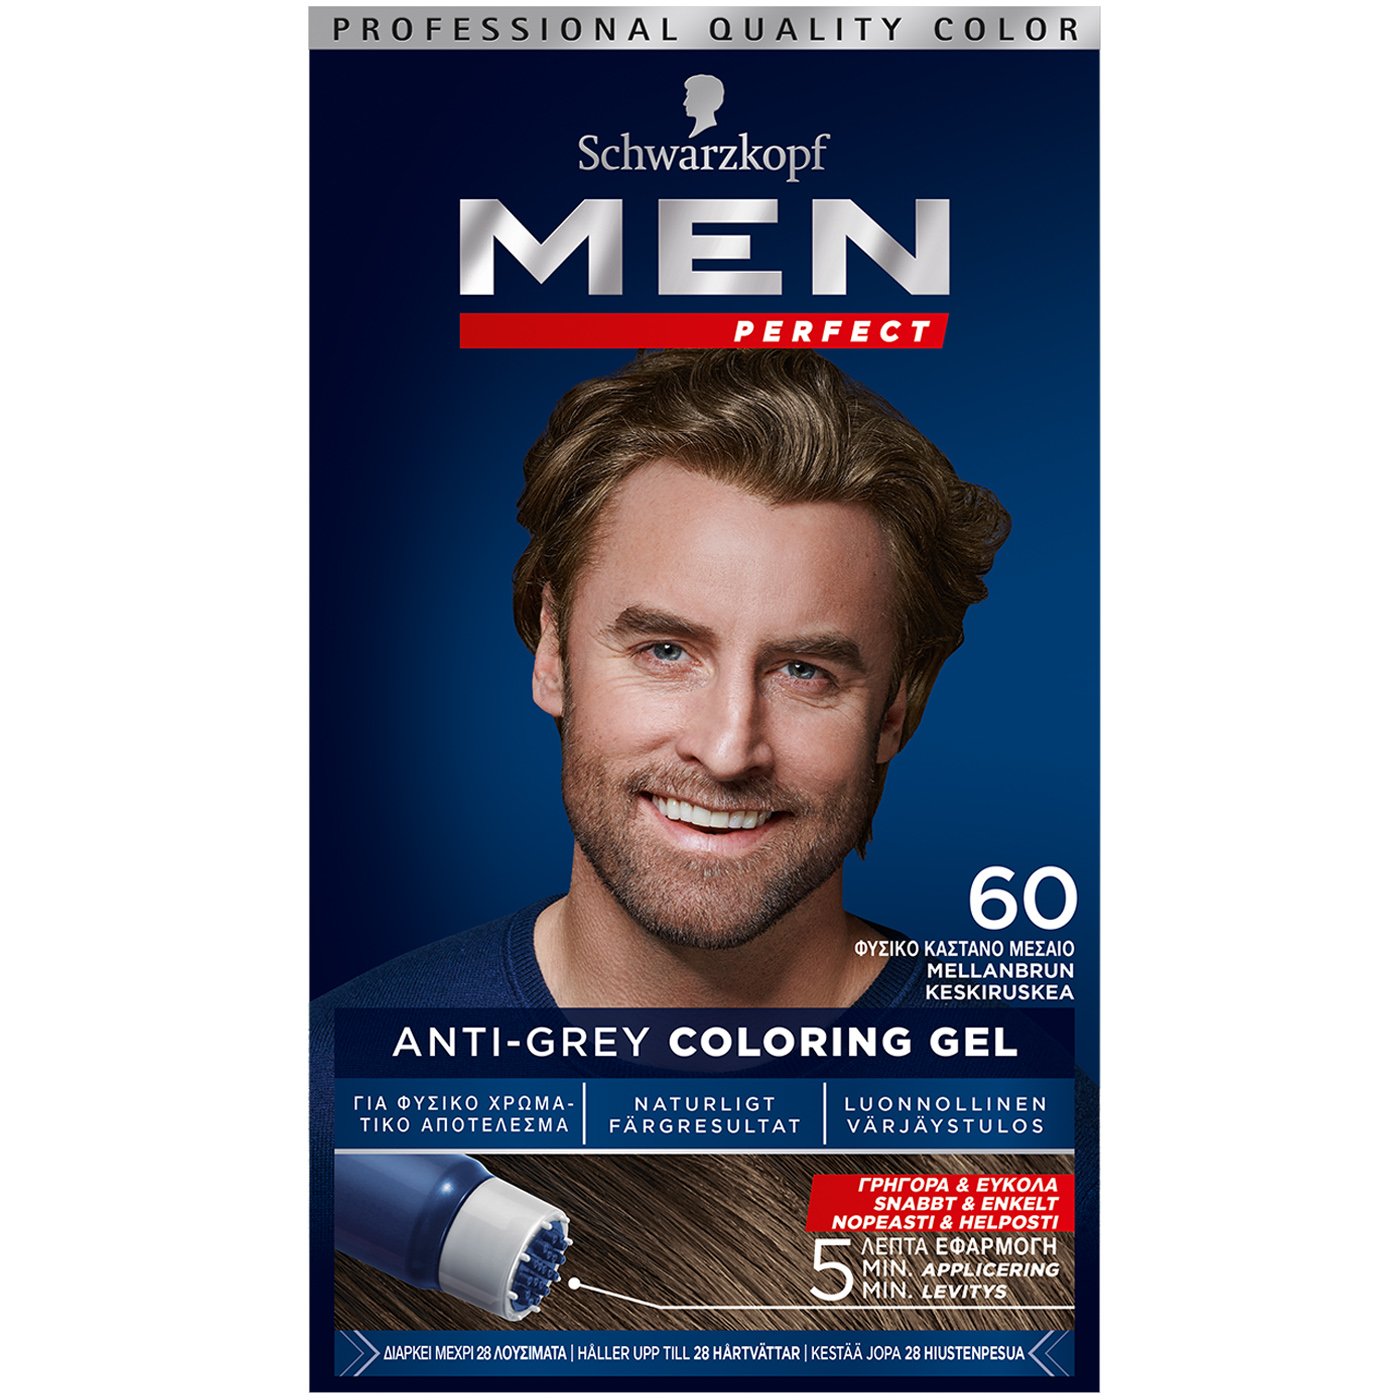 Schwarzkopf Men Perfect Επαγγελματική Βαφή Gel Μαλλιών για Άνδρες, Κάλυψη των Λευκών & 100% Φυσικό Αποτέλεσμα – N60 Φυσικό Καστανό Μεσαίο